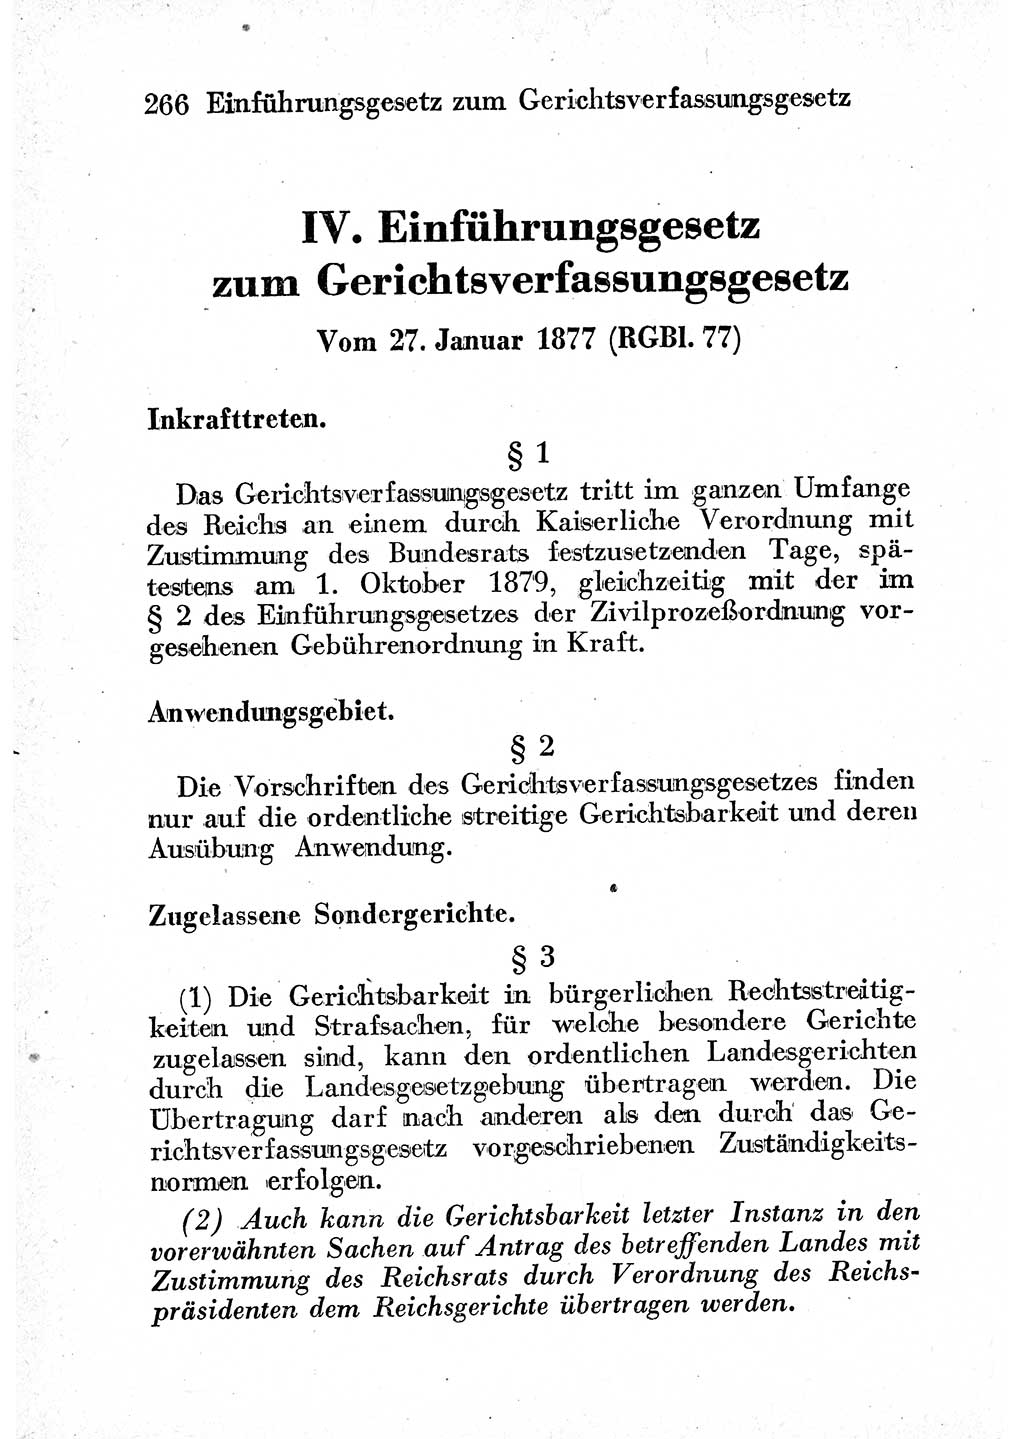 Strafprozeßordnung (StPO), Gerichtsverfassungsgesetz (GVG) und zahlreiche Nebengesetze der sowjetischen Besatzungszone (SBZ) in Deutschland 1949, Seite 266 (StPO GVG Ges. SBZ Dtl. 1949, S. 266)